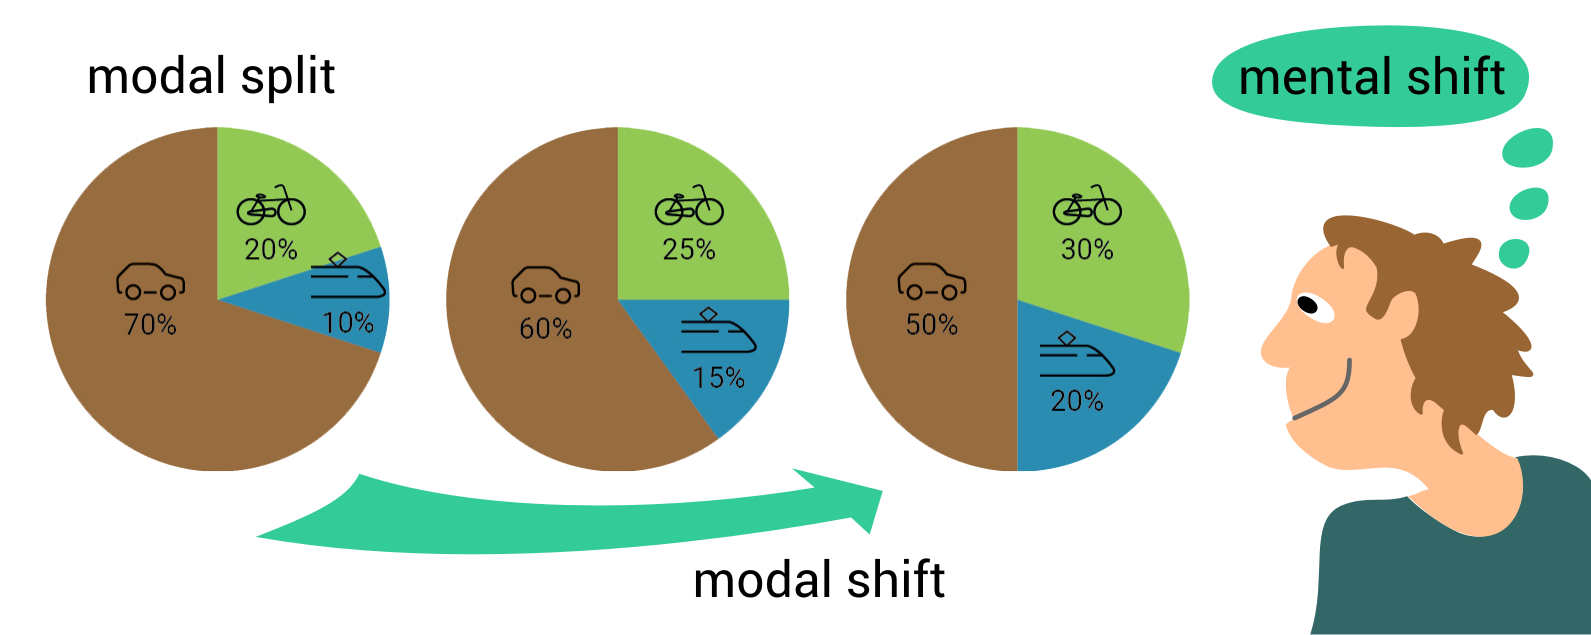 modal split, modal shift, mental shift